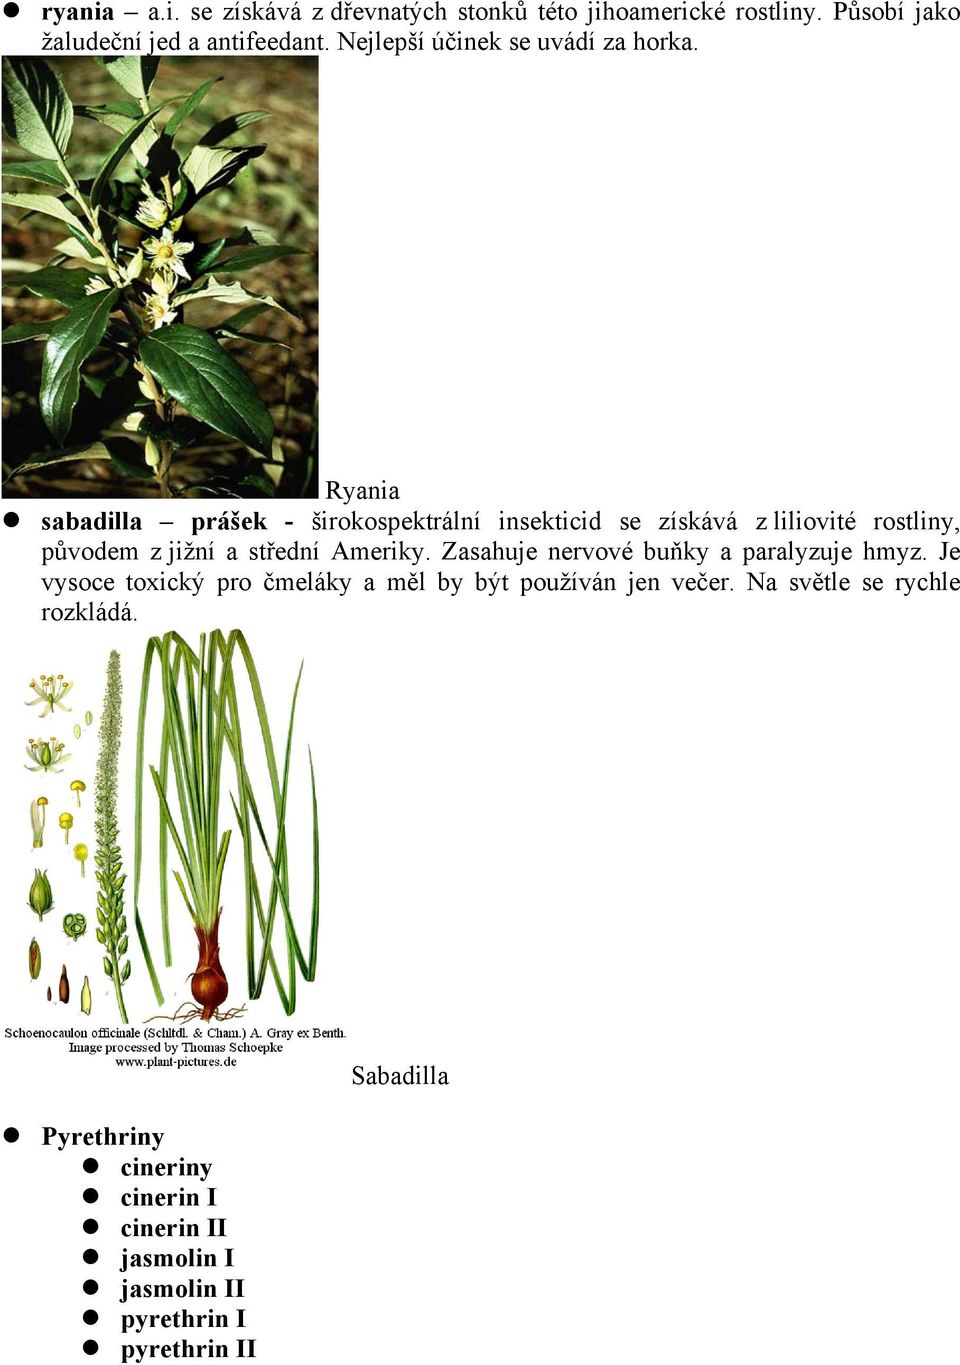 Ryania sabadilla prášek - širokospektrální insekticid se získává z liliovité rostliny, původem z jižní a střední Ameriky.